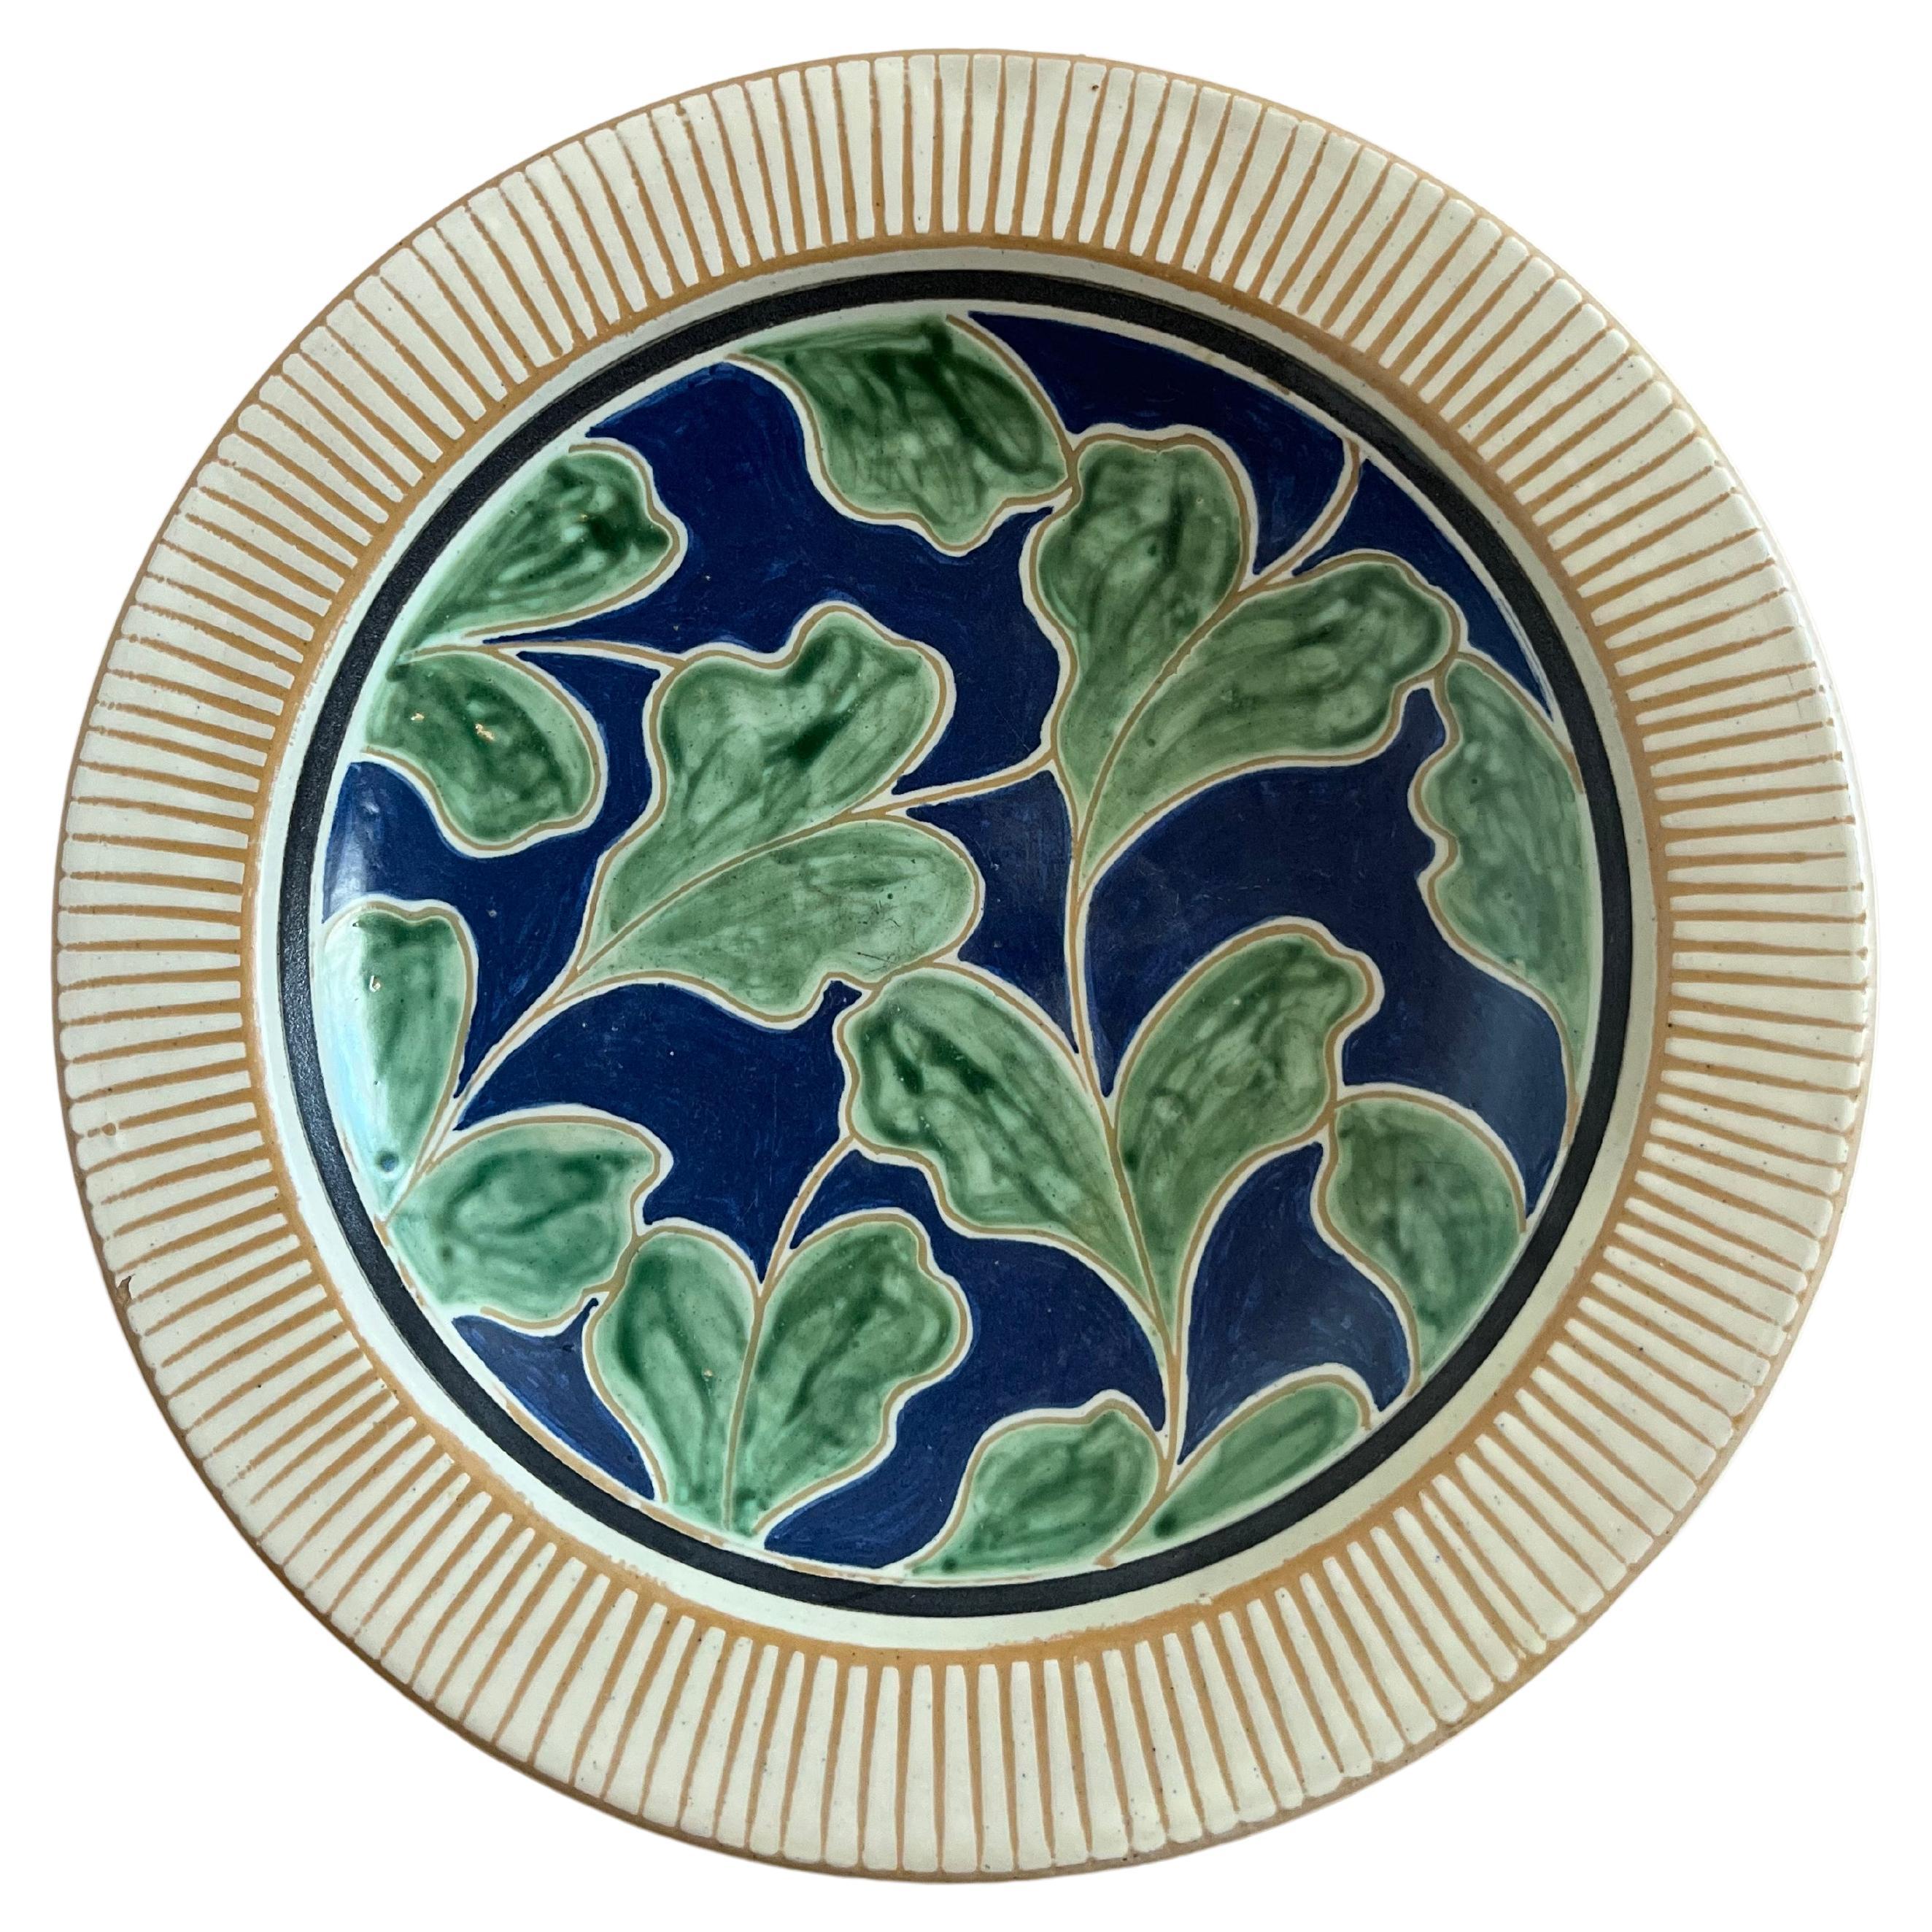 Danish midcentury handmade ceramic dish in cream, green and blue glazing